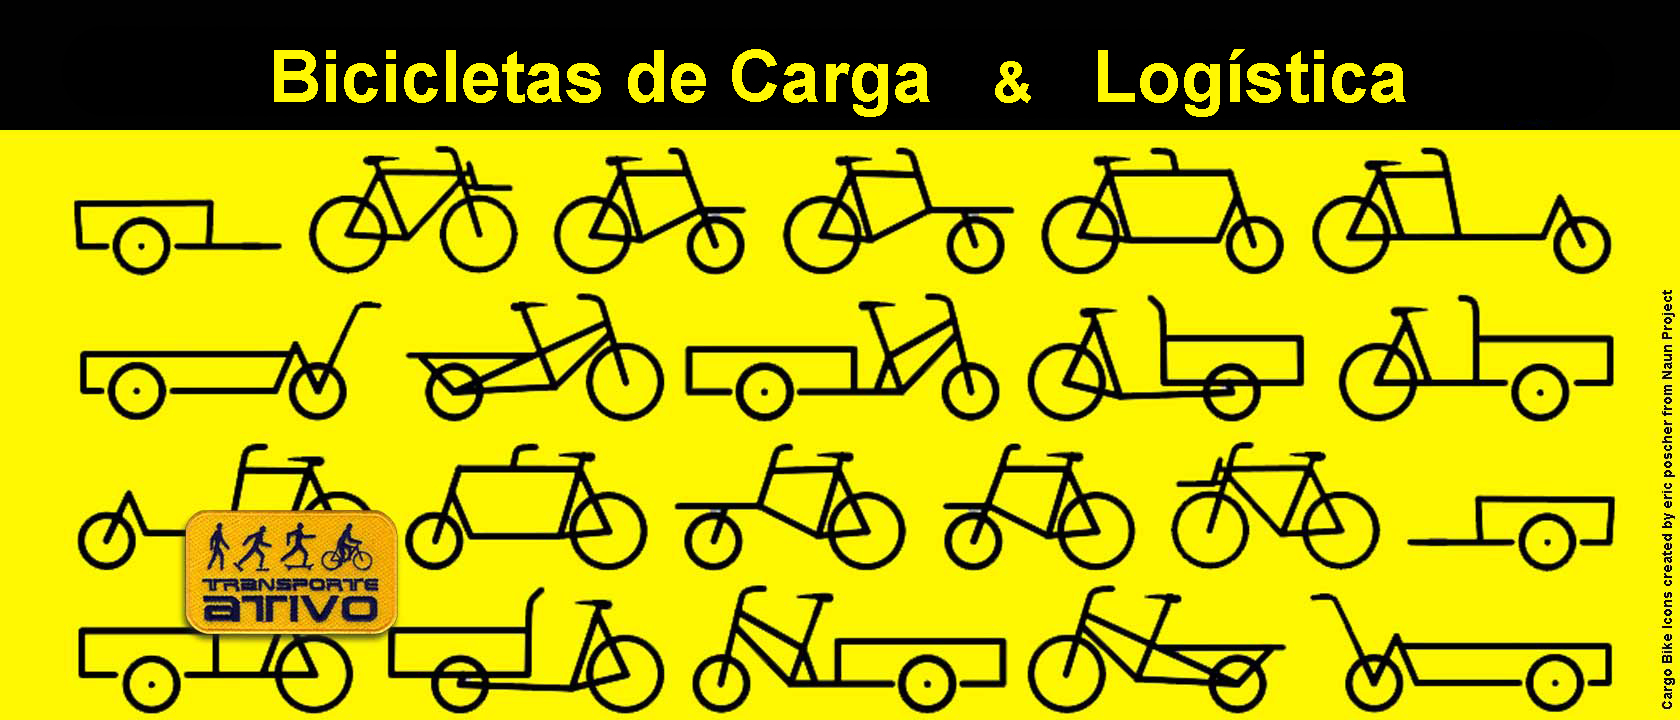 Governo do Estado de Pernambuco - Uso de bicicletas e mobilidade urbana  como tema de palestra